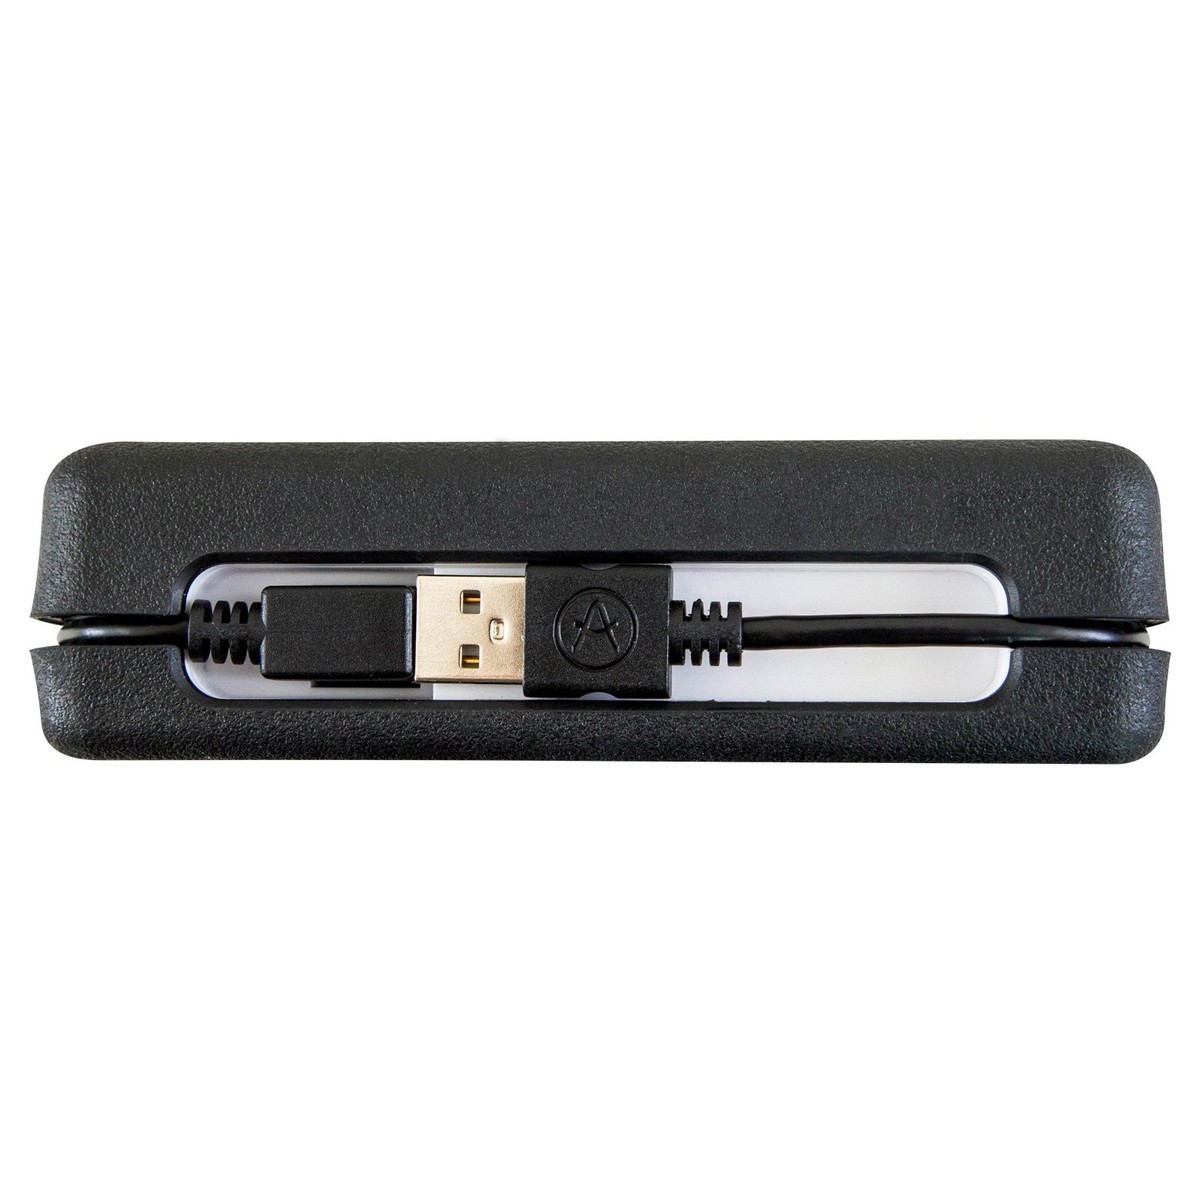 ARTURIA MICROLAB BLACK CONTROLLER TASTIERA 25 TASTI MINI MIDI – USB COLORE NERO 3